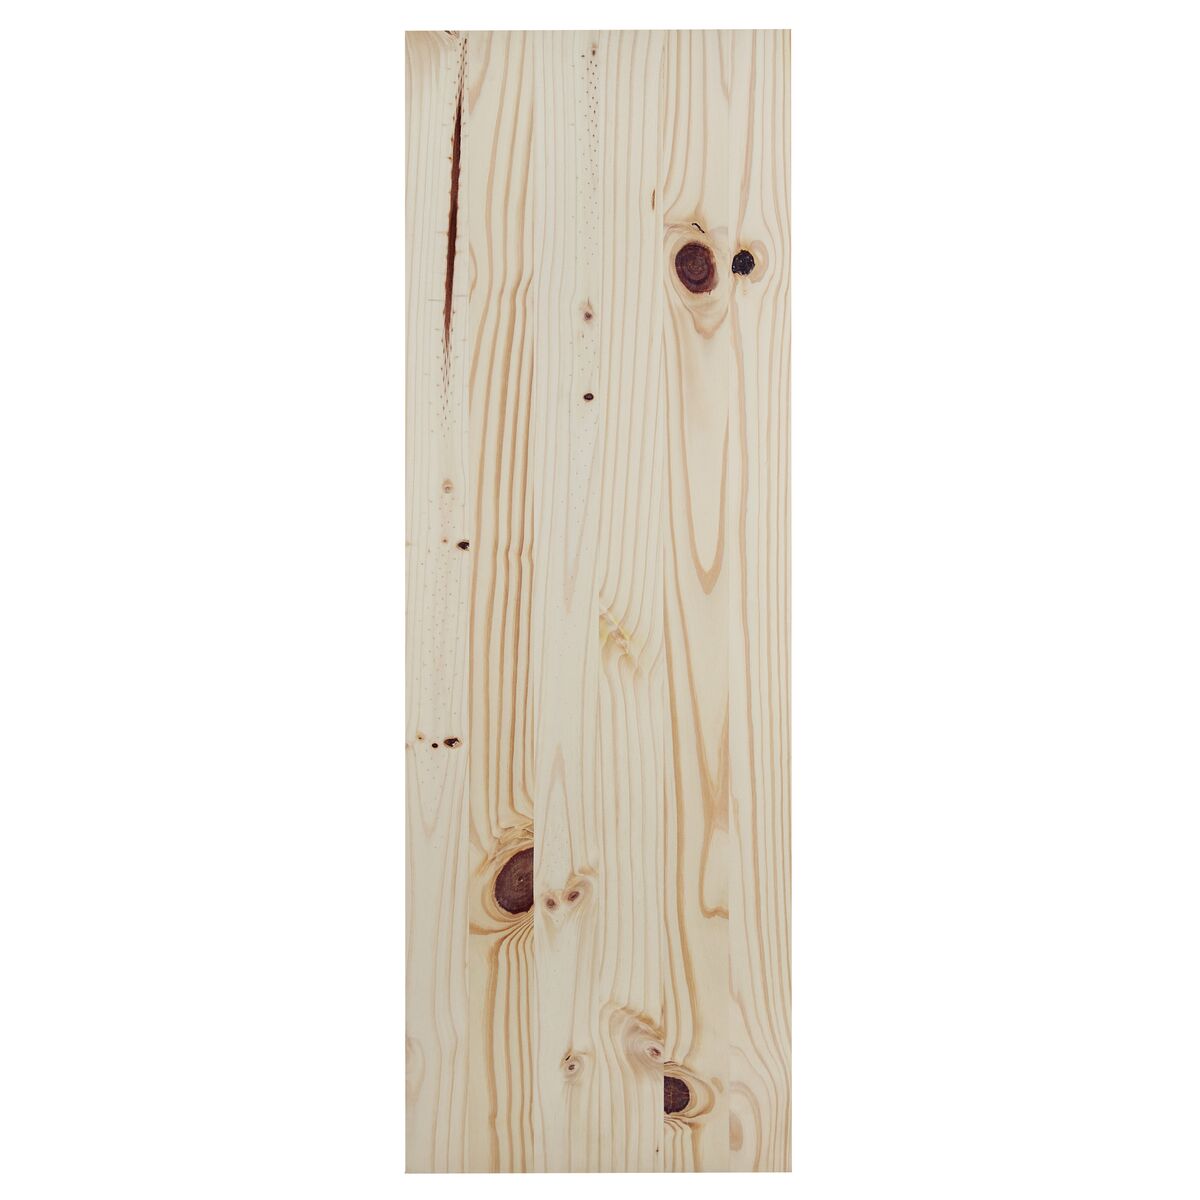 
Painel Tramontina Modulare em Madeira Pinus com Acabamento Natural CC 600x300x18 mm
